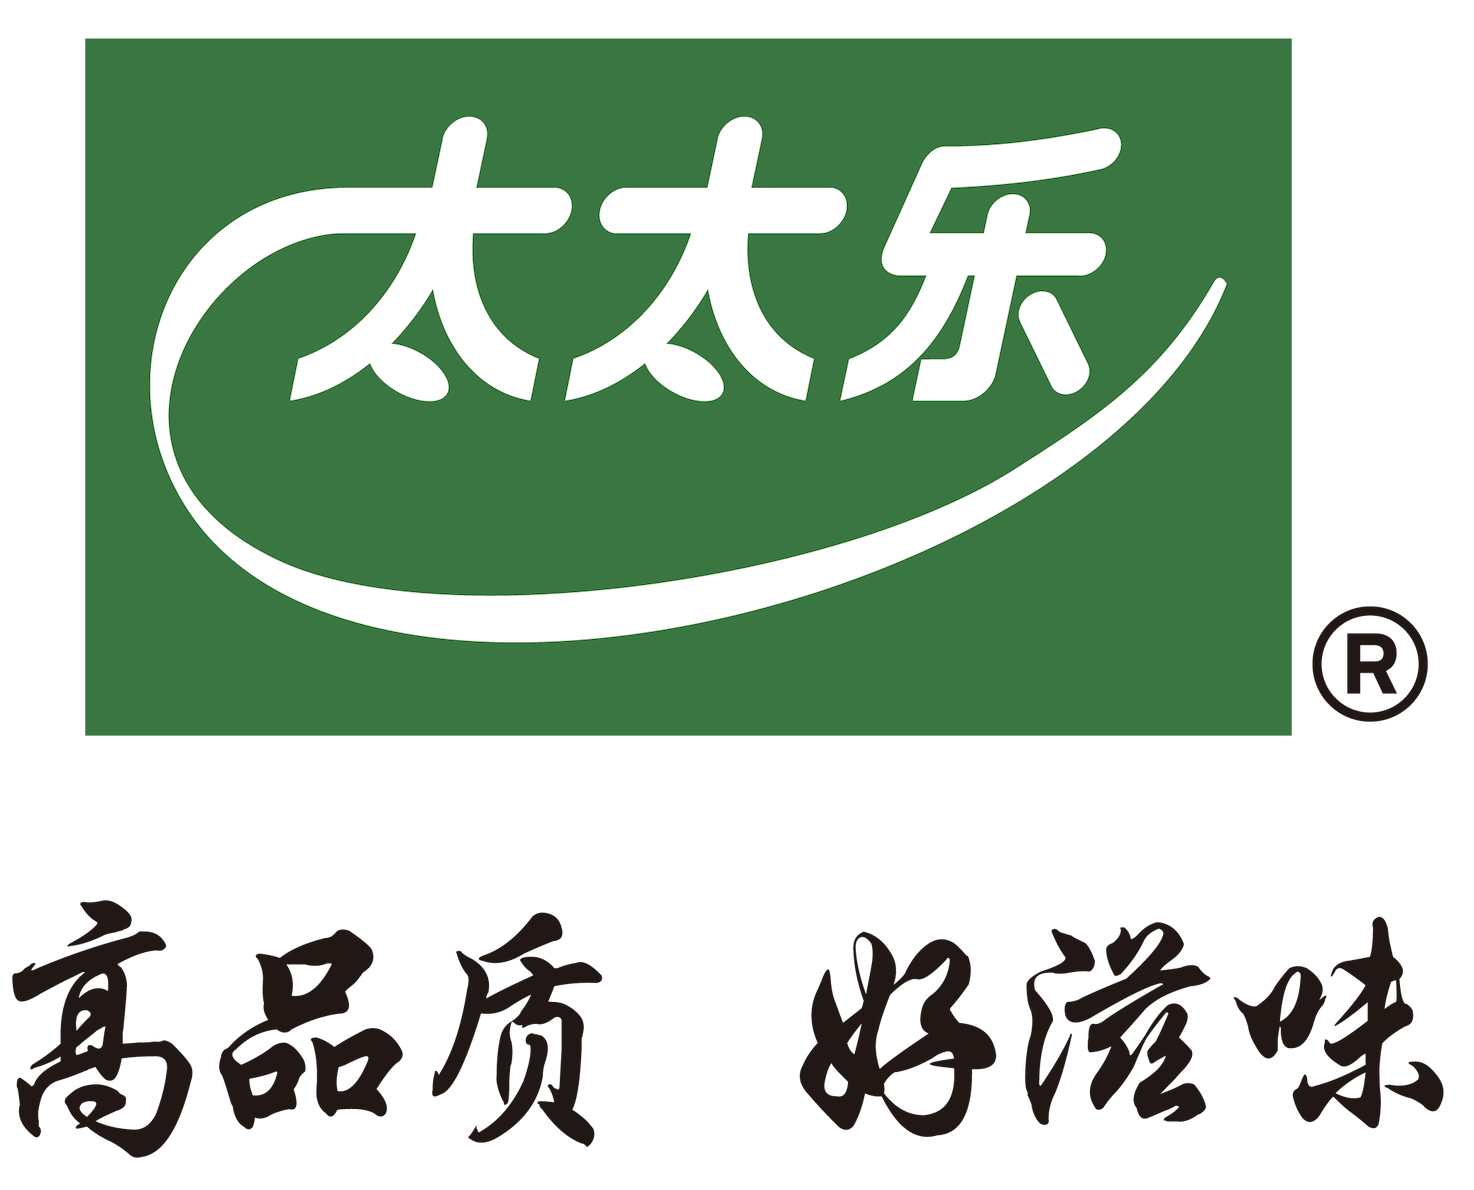 Shanghai Totole Food Ltd.